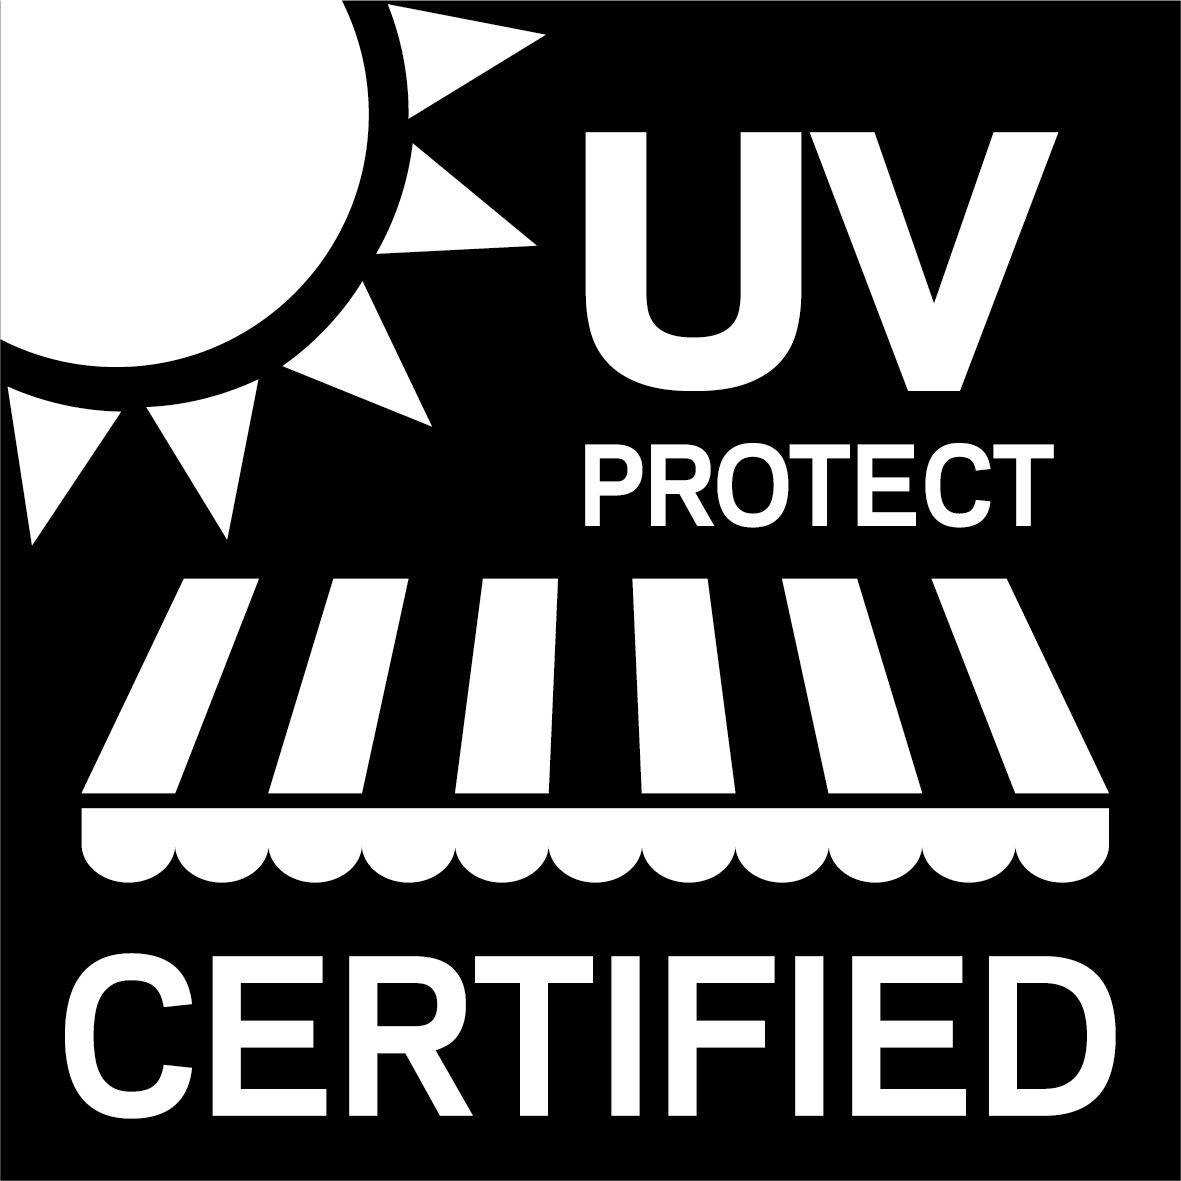 Tutti i tessuti Sattler sono sottoposti ai criteri di test UV più rigorosi per garantire la loro protezione.